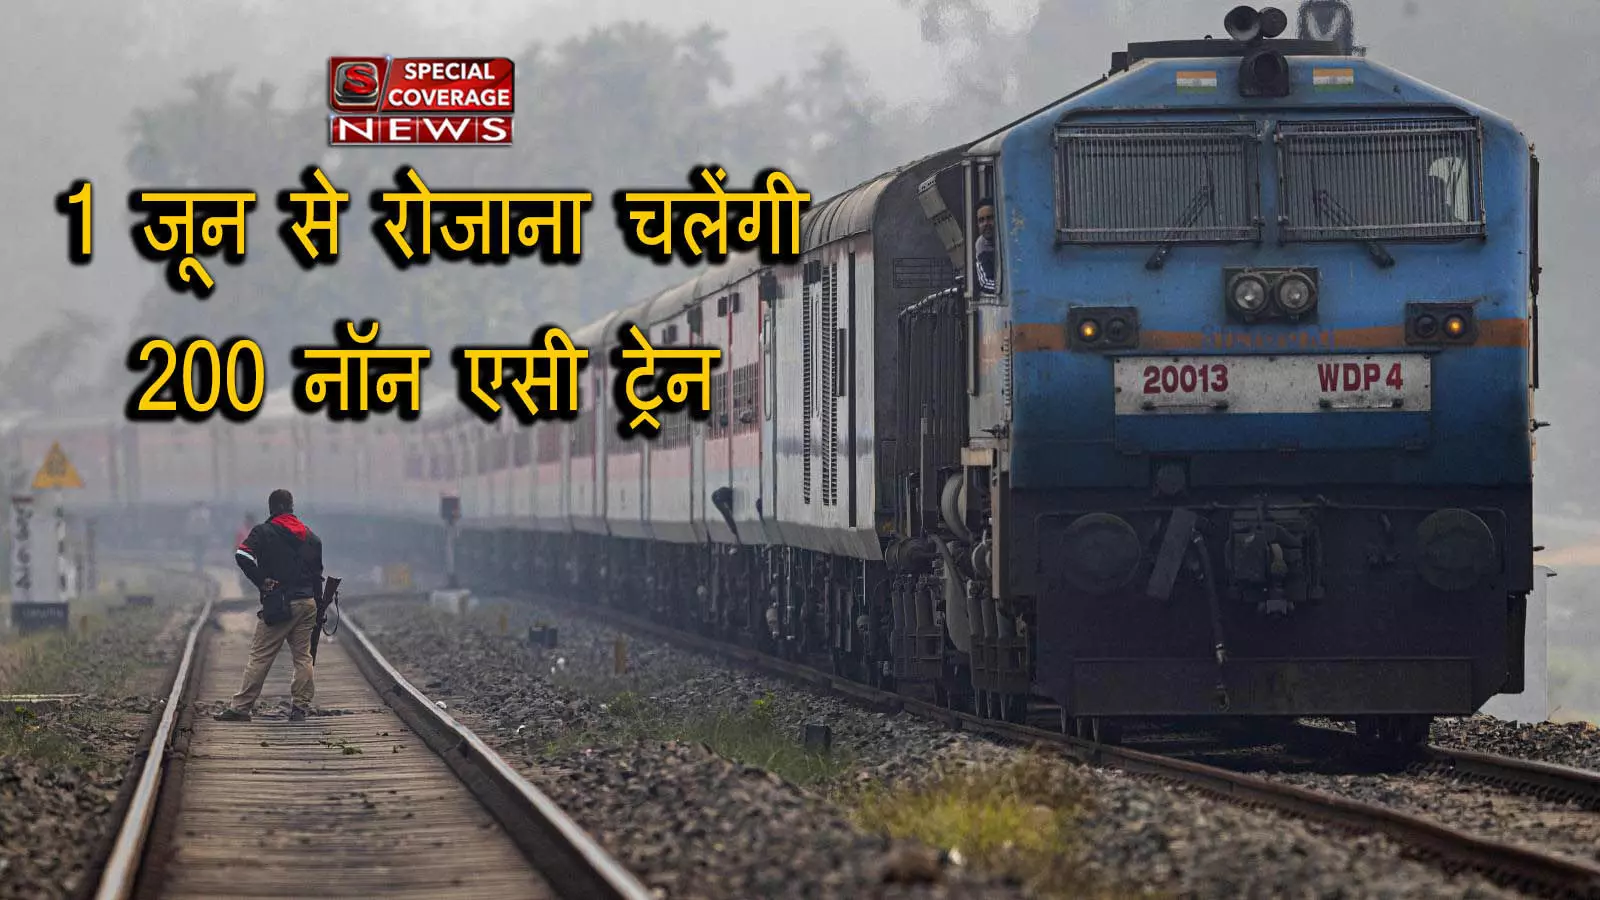 रेल मंत्रालय ने 30 राजधानी ट्रेनों और 200 मेल-एक्सप्रेस ट्रेनों के लिए रिजर्वेशन पीरियड 30 दिनों से बढ़ाकर 120 दिन किया